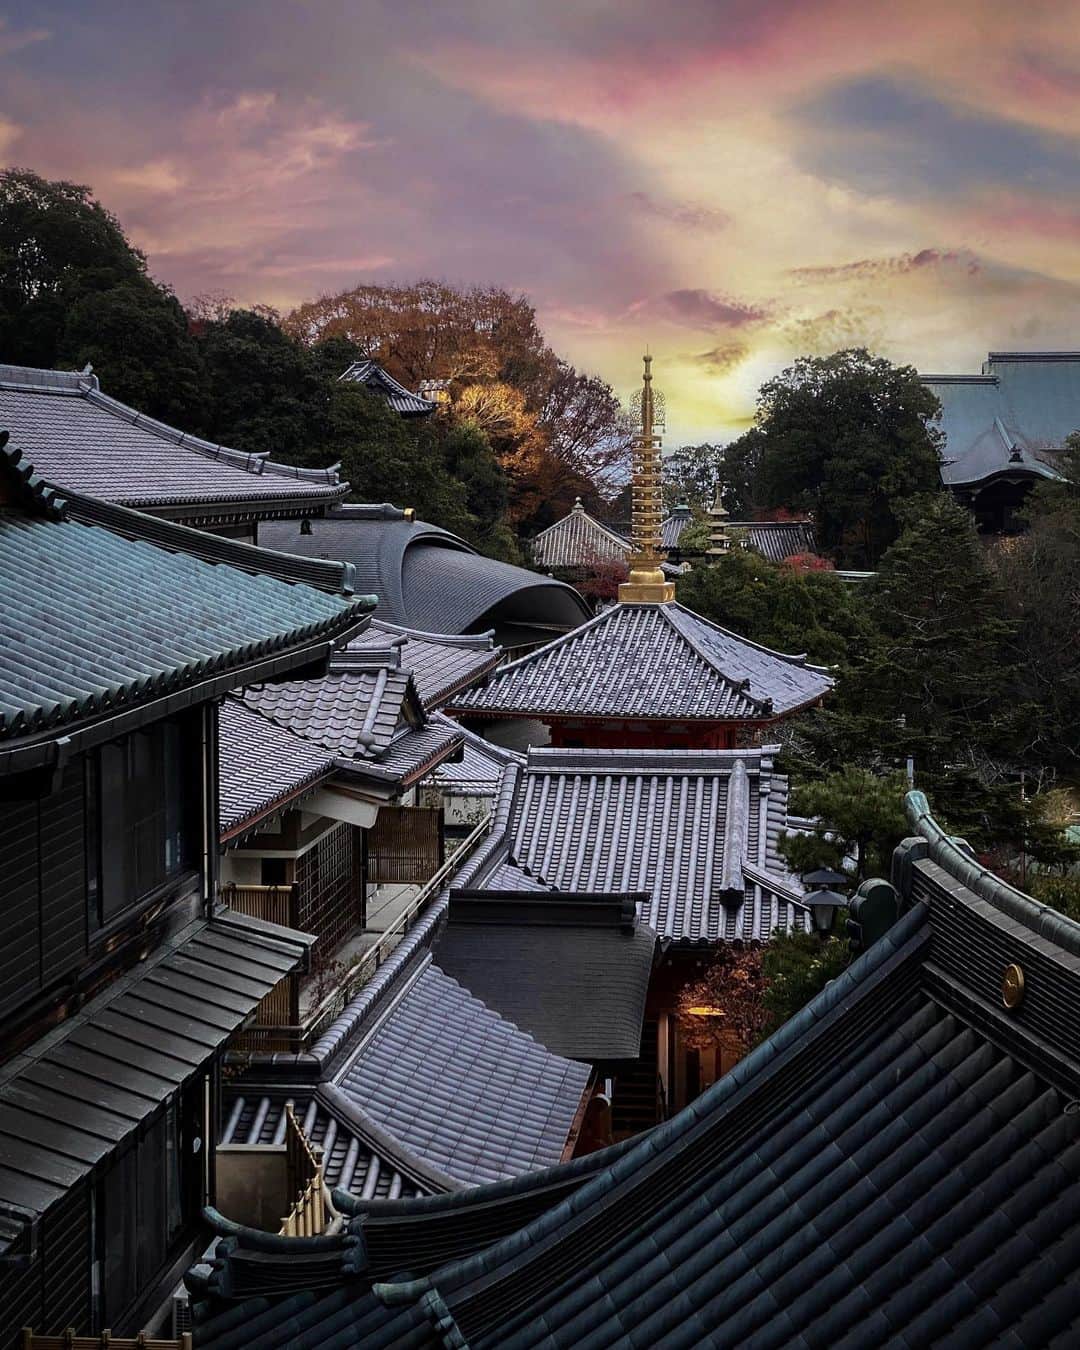 Koichiのインスタグラム：「.  Workation experience at a temple's Shukubo  Vol.1  奈良の信貴山にある宿坊に滞在して、ワーケーションを体験してきました。 コロナ禍でリモートワークが仕事の新しいスタイルとして定着しましたが、家を離れ旅先で仕事をしながら、合間にその土地の自然や文化に触れ、リラックスして過ごす…というのがワーケーション。（Work＋Vacation） 今回は奈良の歴史ある山寺の宿坊に1週間滞在し、日頃なかなか経験することのできない体験ができました！  信貴山は1400年前に聖徳太子が開山した日本で最初の毘沙門天の霊山で、山腹に朝護孫子寺の広大な境内が広がる歴史と豊かな自然のある場所です。  1st / 宿坊 玉蔵院からの夕景。ここからは境内に幾つもある、お堂や塔の屋根の連なりが見渡せます。  2nd / 朝護孫子寺の境内は、石畳の参道に沿って2000基もの灯籠が並び、夕方から翌朝まで明かりが灯ります。  3rd / まだ暗い朝方から日が沈むまで、境内に立ち並ぶ数十棟のお堂を僧侶がお勤めで行き交っています。  4th / 早朝6時過ぎの本堂から。南の空に三日月と明けの明星が。  5th / 信貴生駒スカイライン 十三峠から望む大阪平野の夜景。  #信貴山ワーケーション #奈良 #信貴山 #SAGOJO ,」